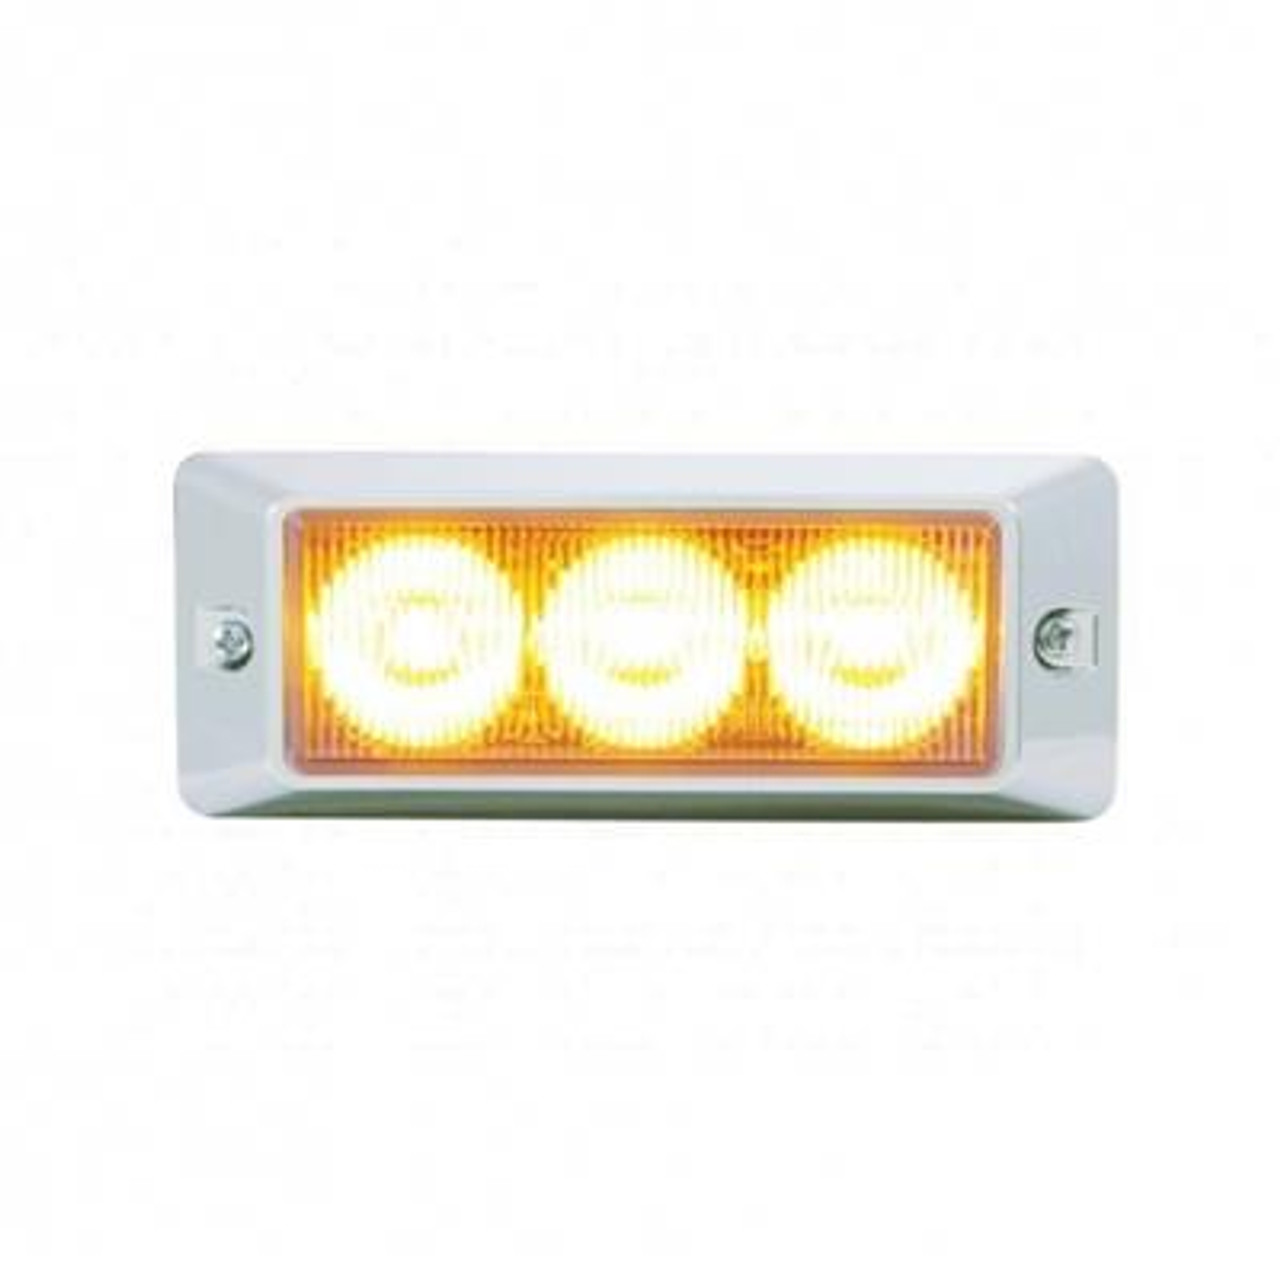 3 High Power LED Warning Light - Amber LED